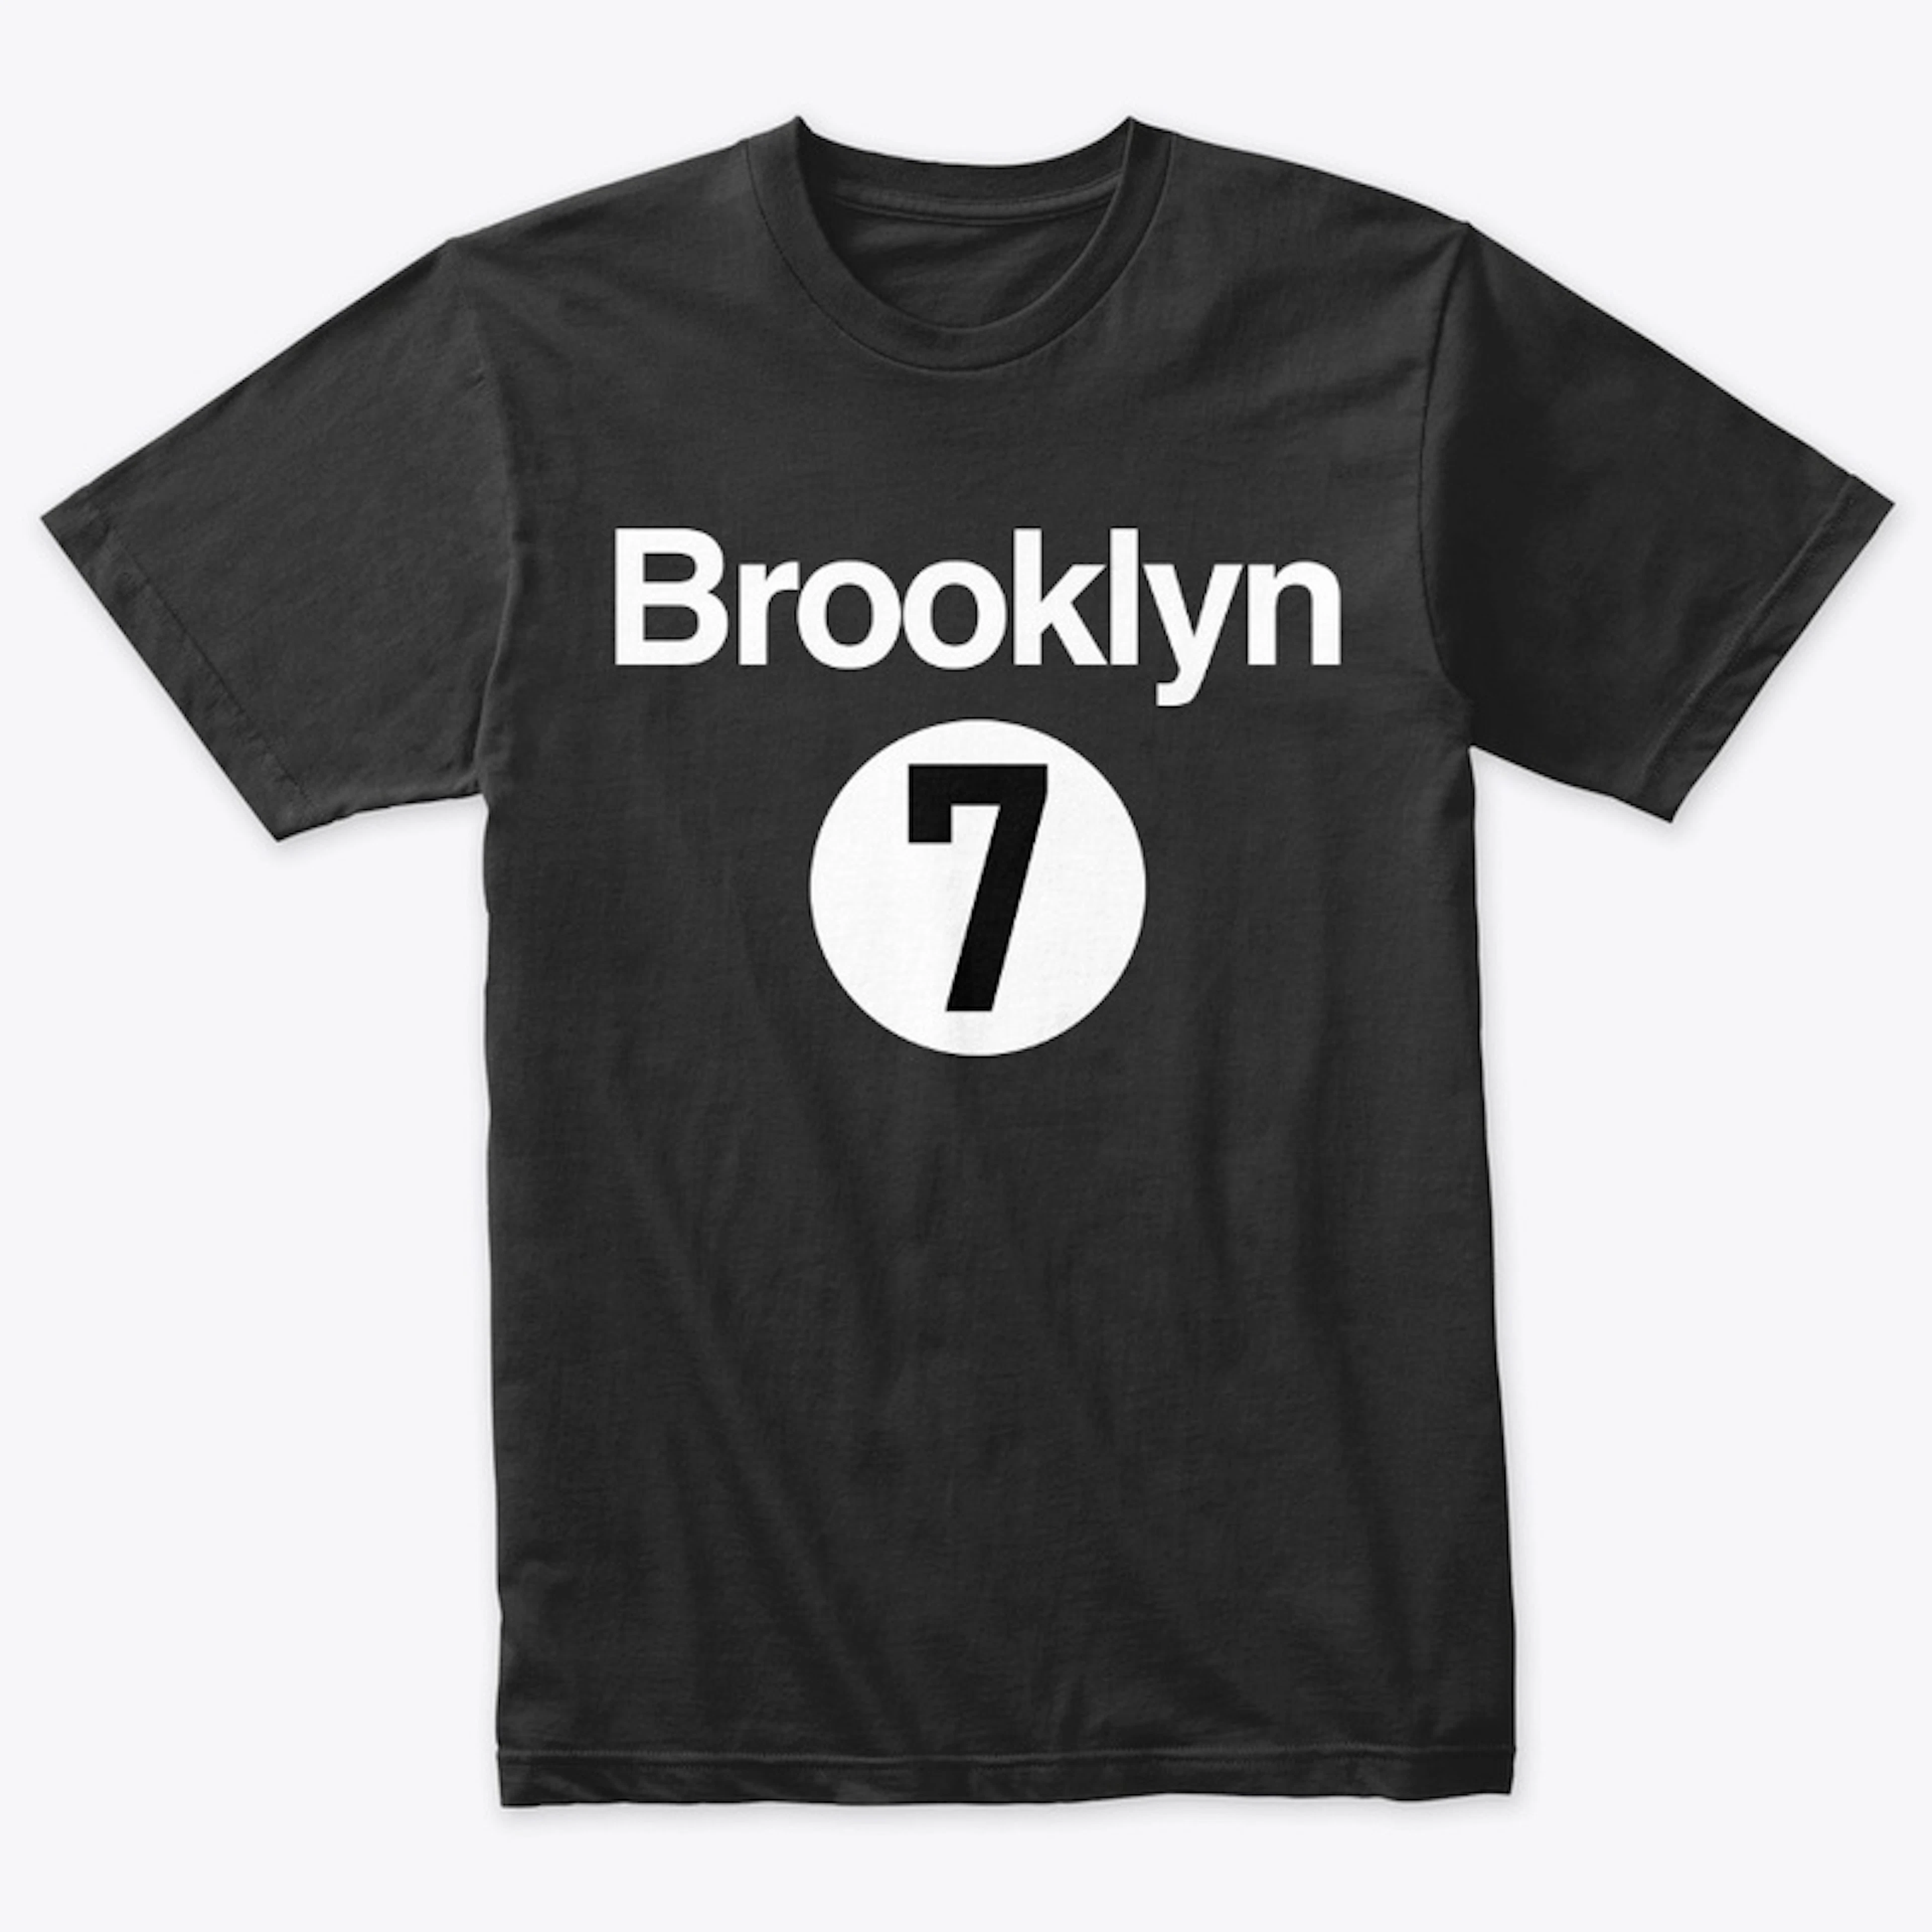 Brooklyn #7 City | Ninety4feet